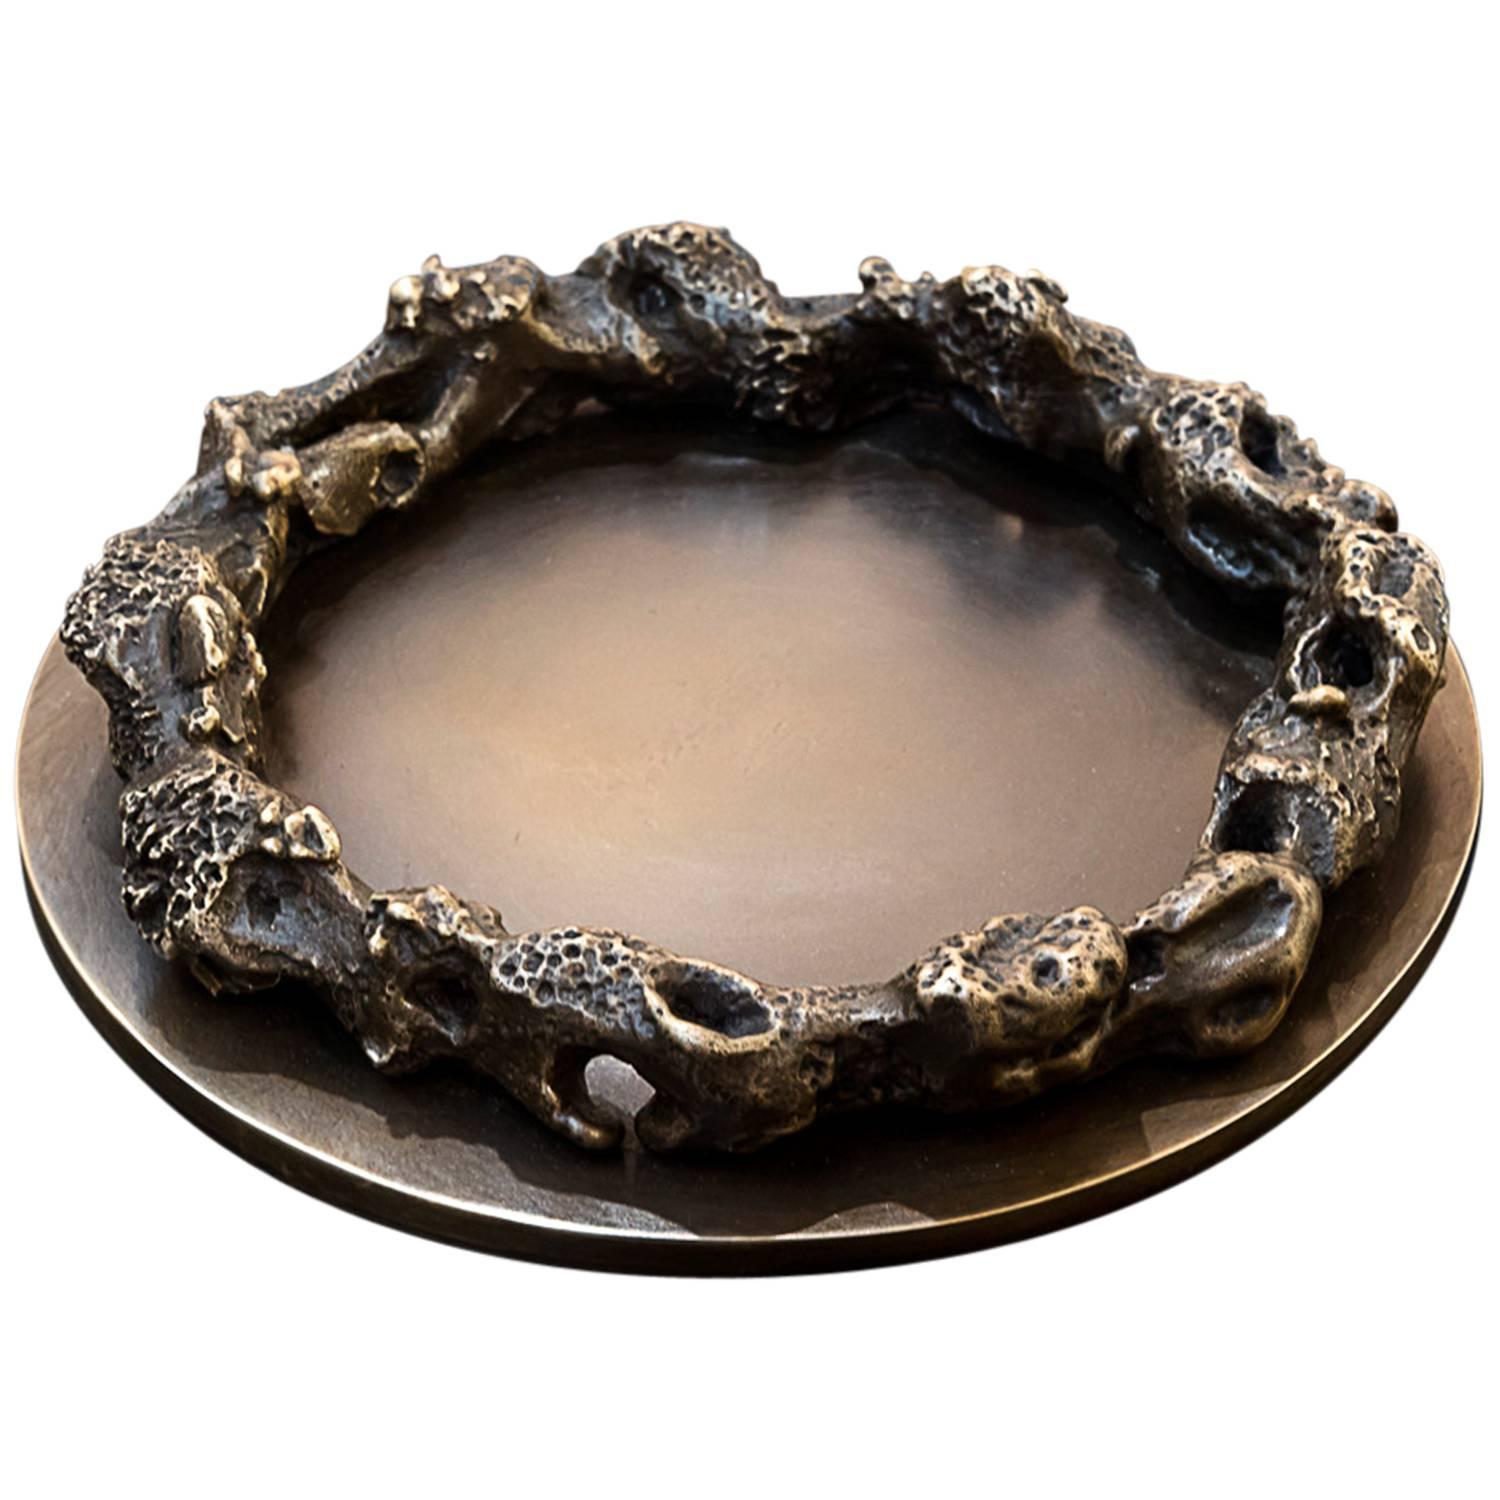 Bronze Dish, 'Grotto Circular' by Mattia Bonetti For Sale